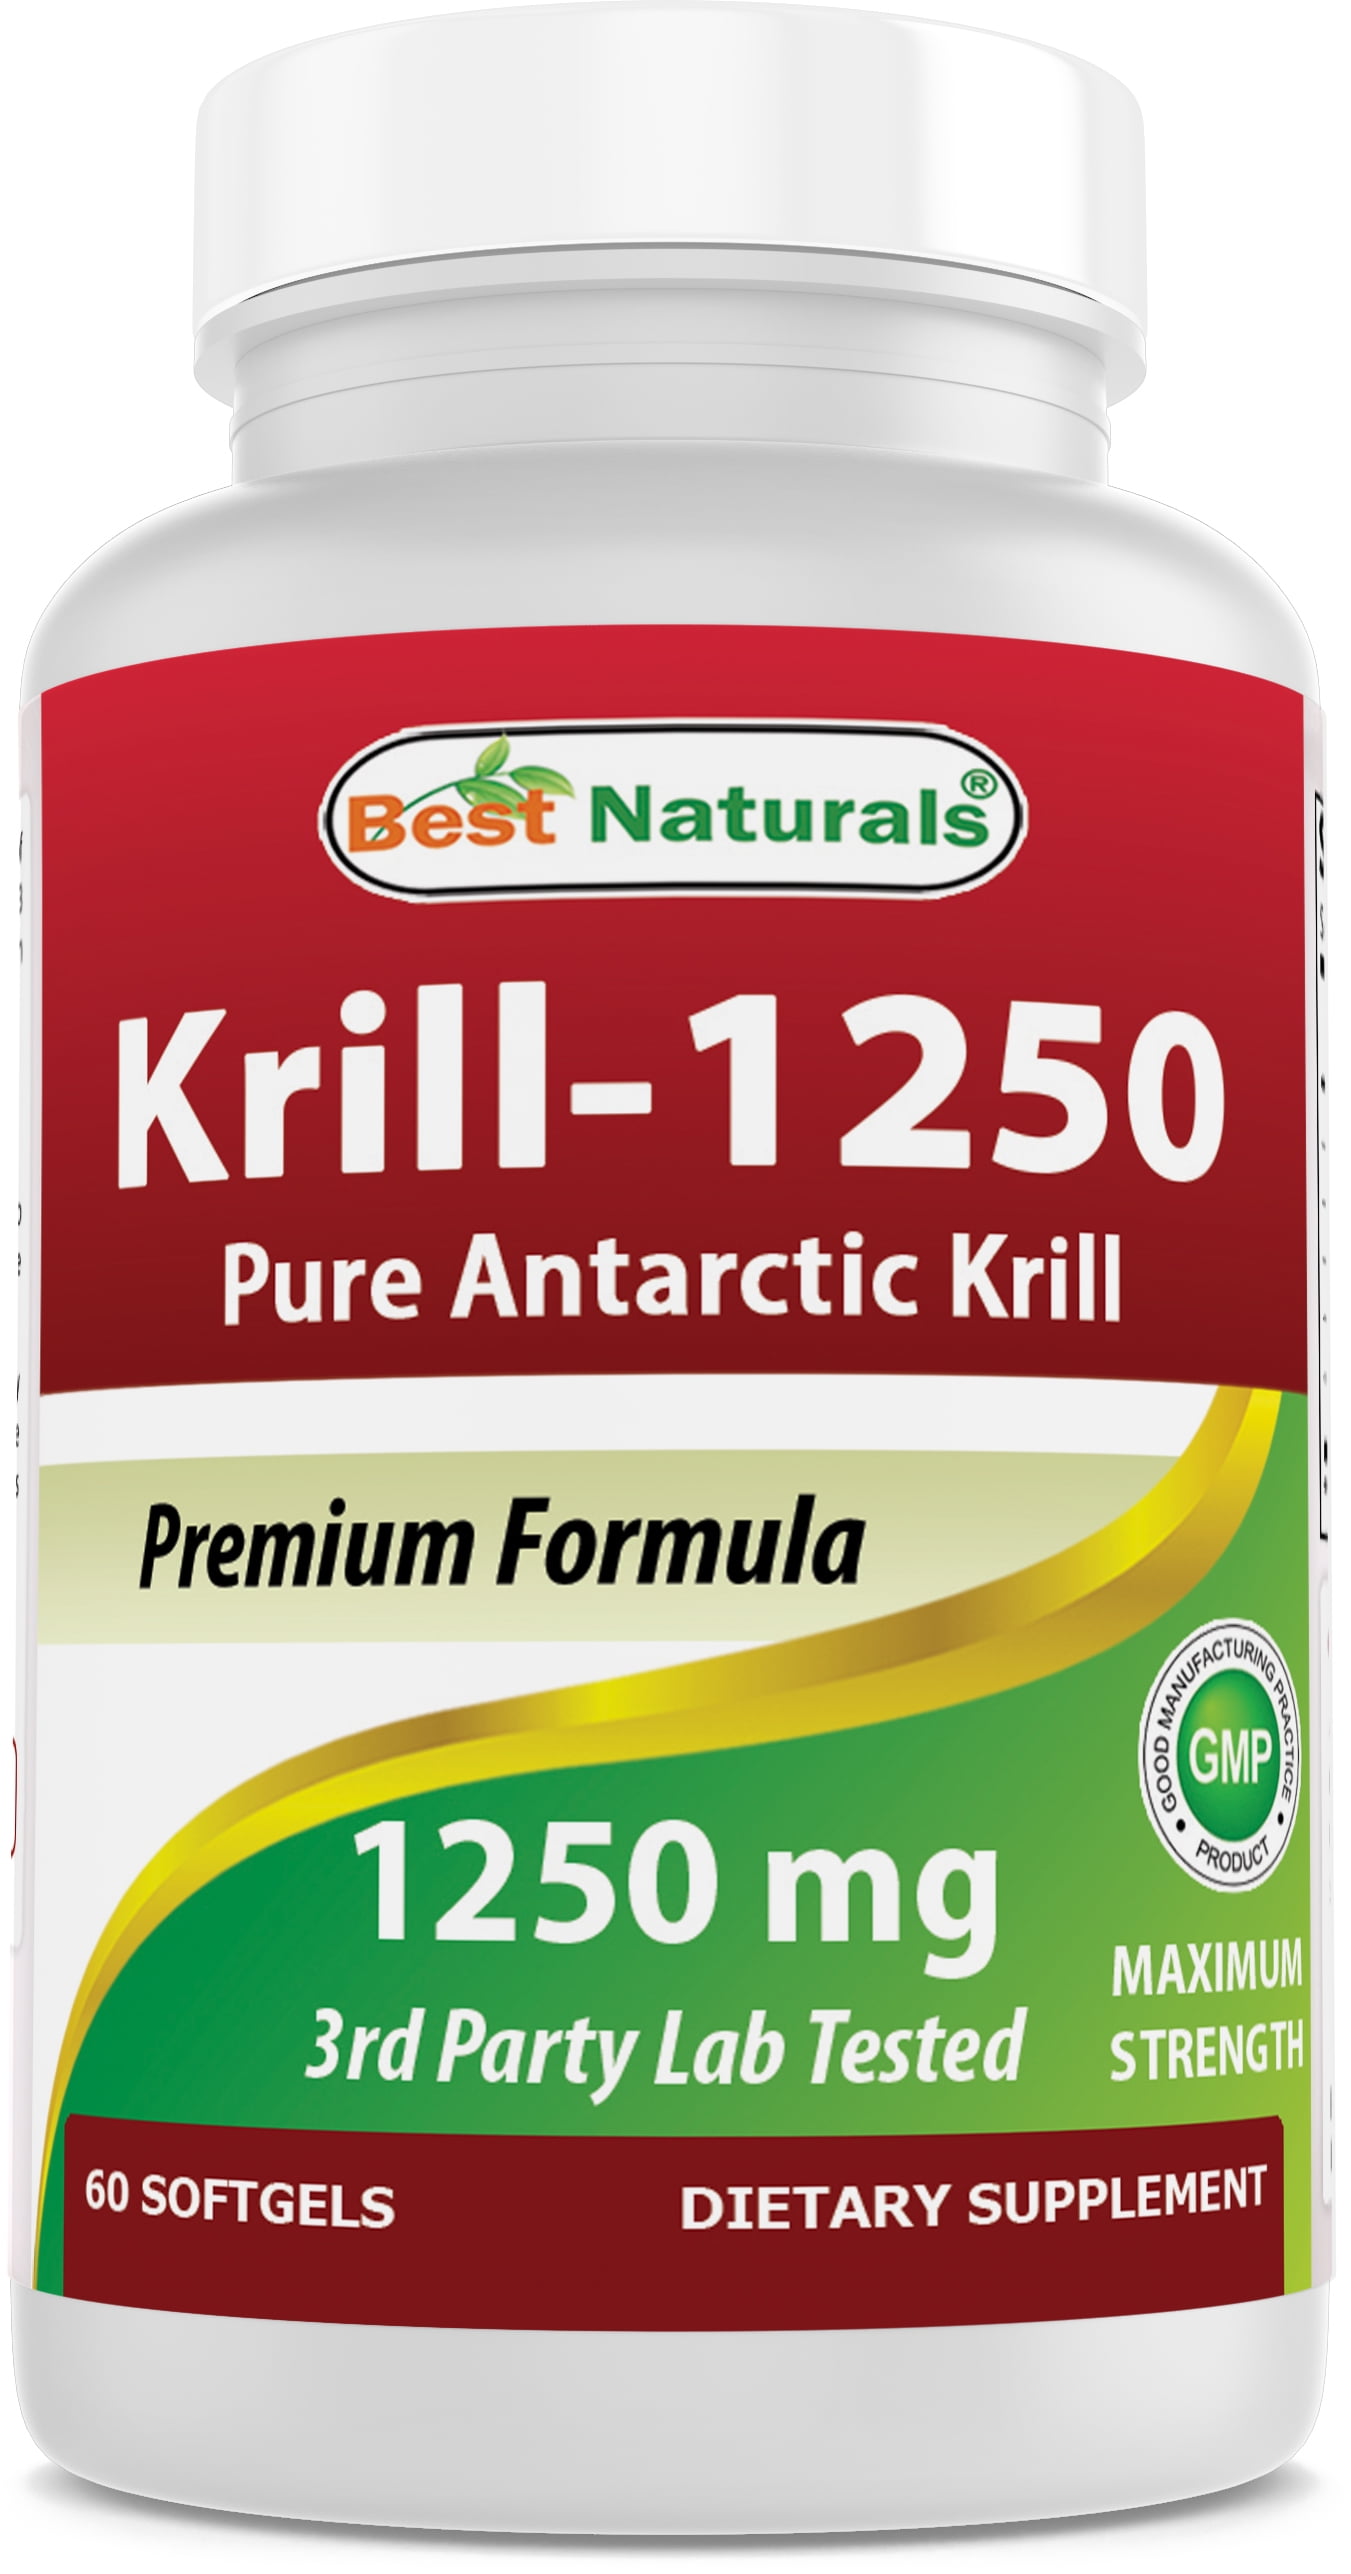 Pure krill oil